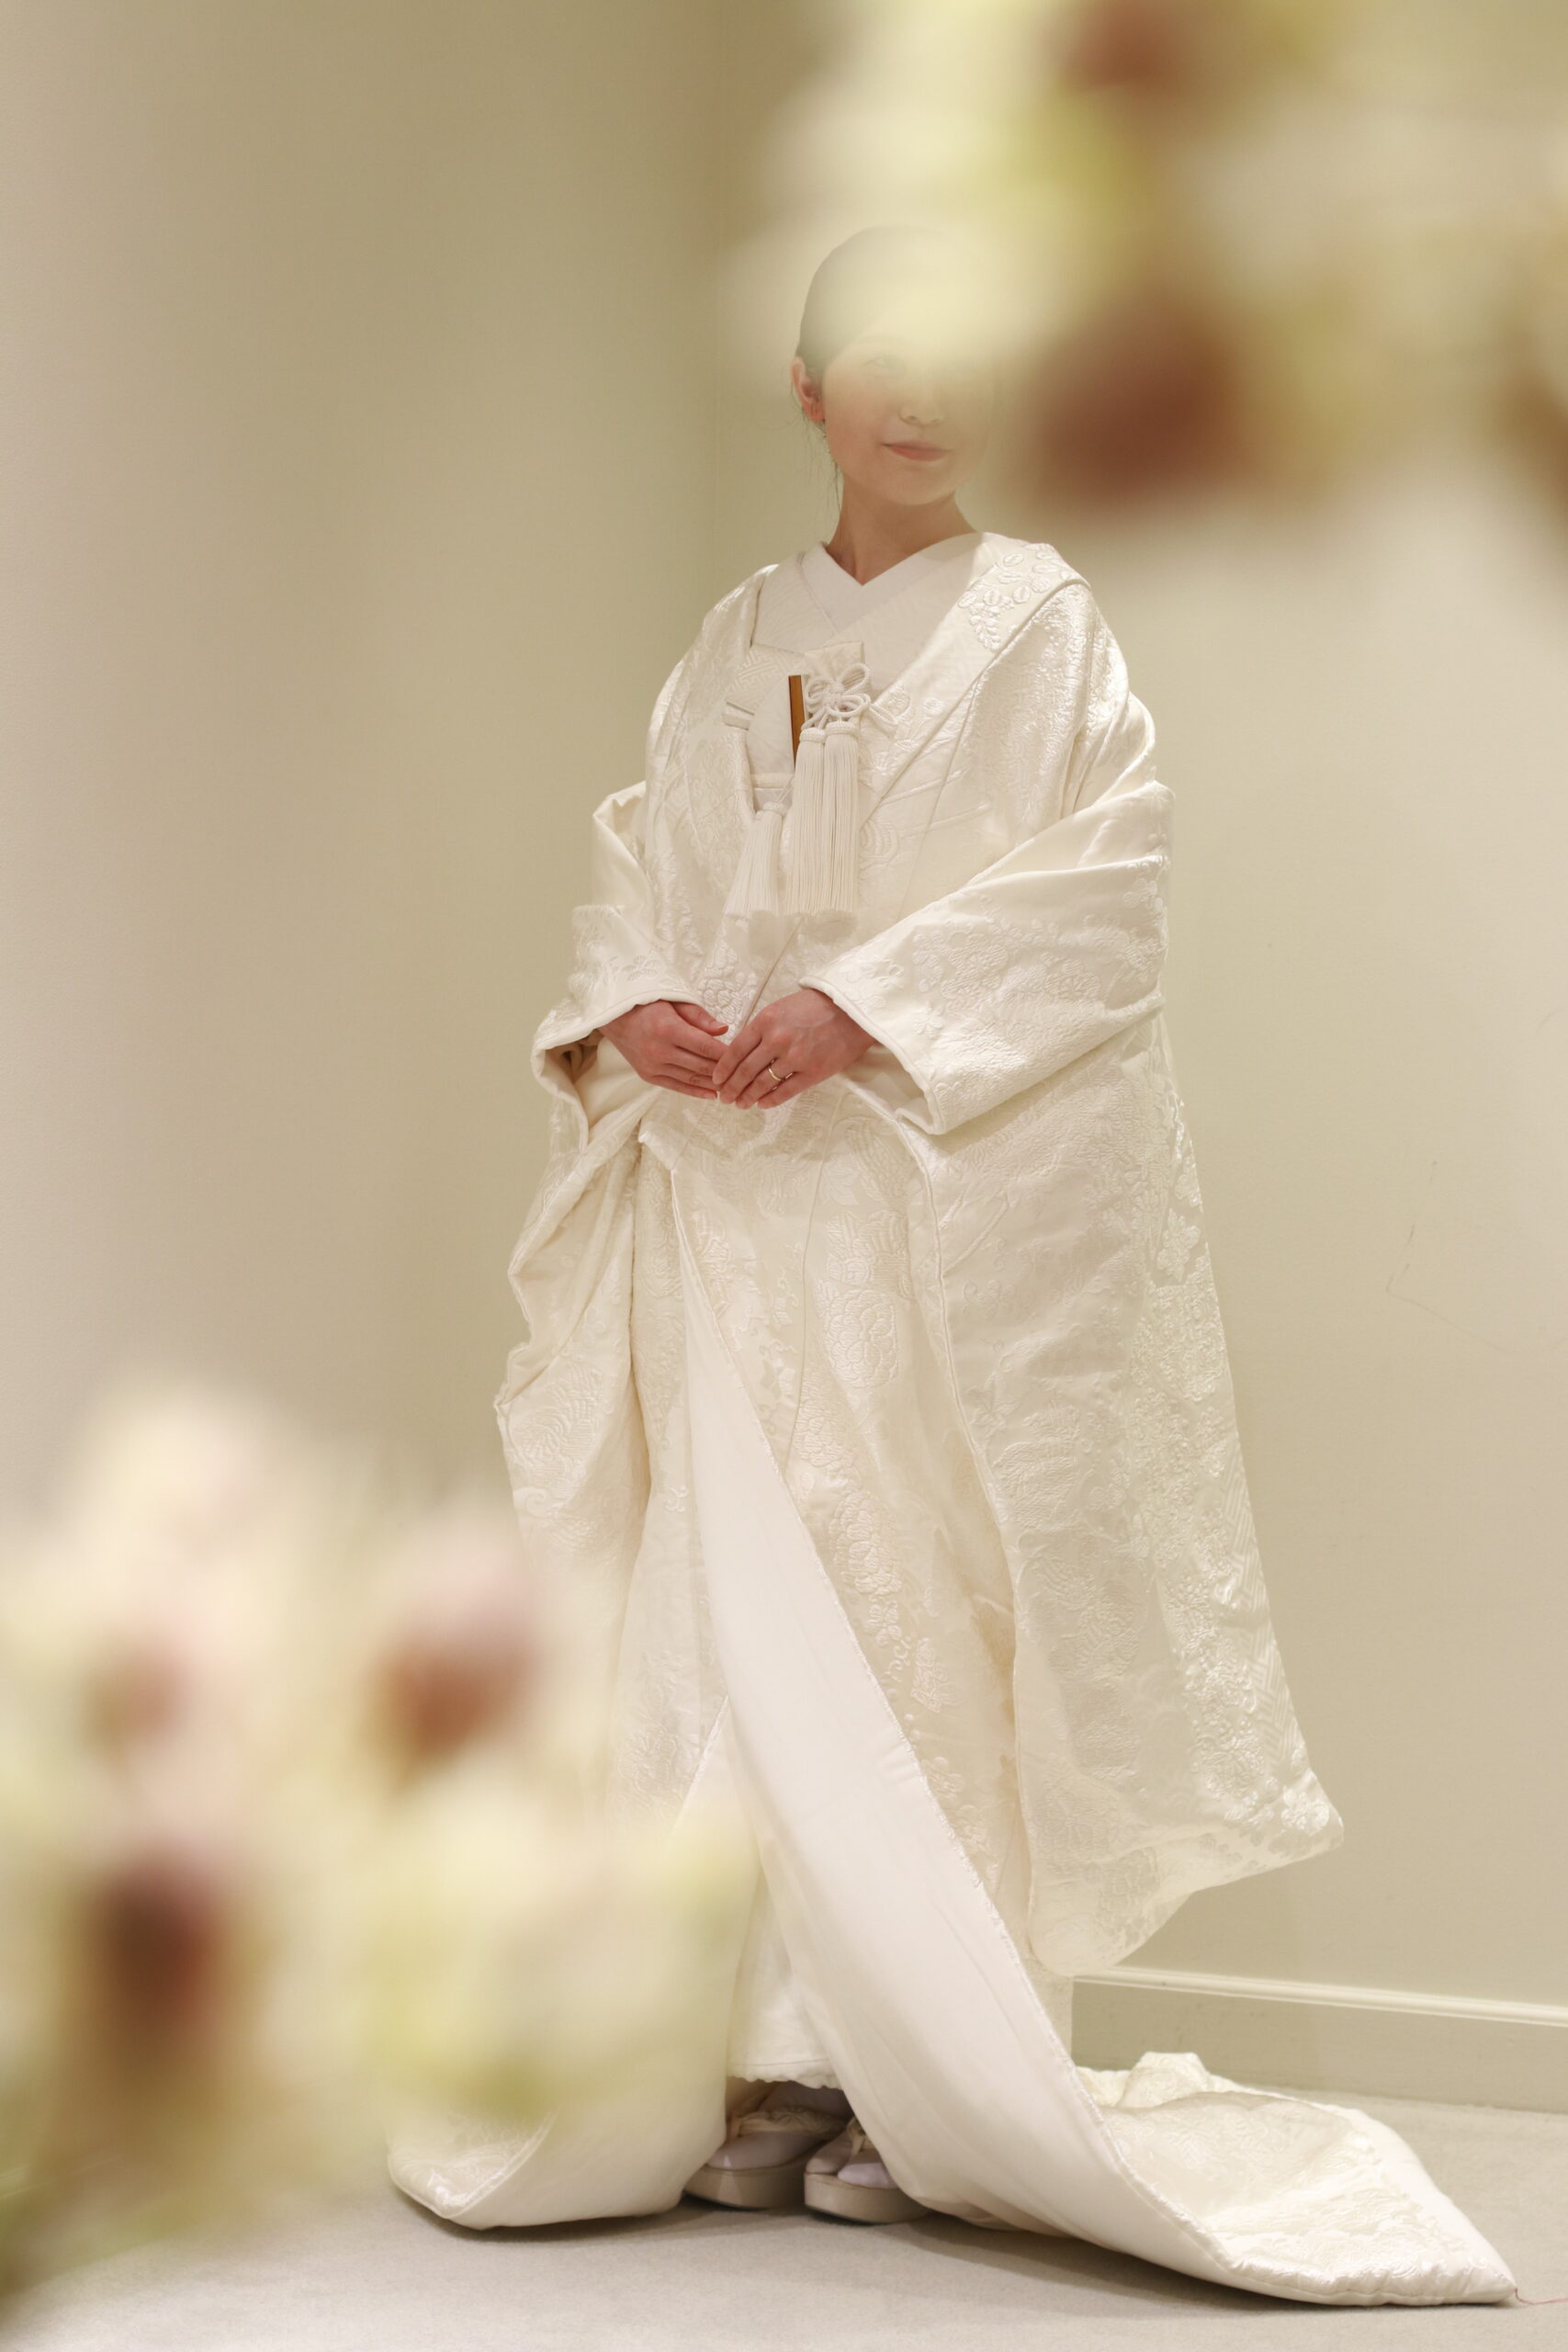 日本には歴史ある婚礼衣裳があります。結婚式でぜひ日本の花嫁様にぜひ選んでいただきたい白無垢をご紹介いたします。